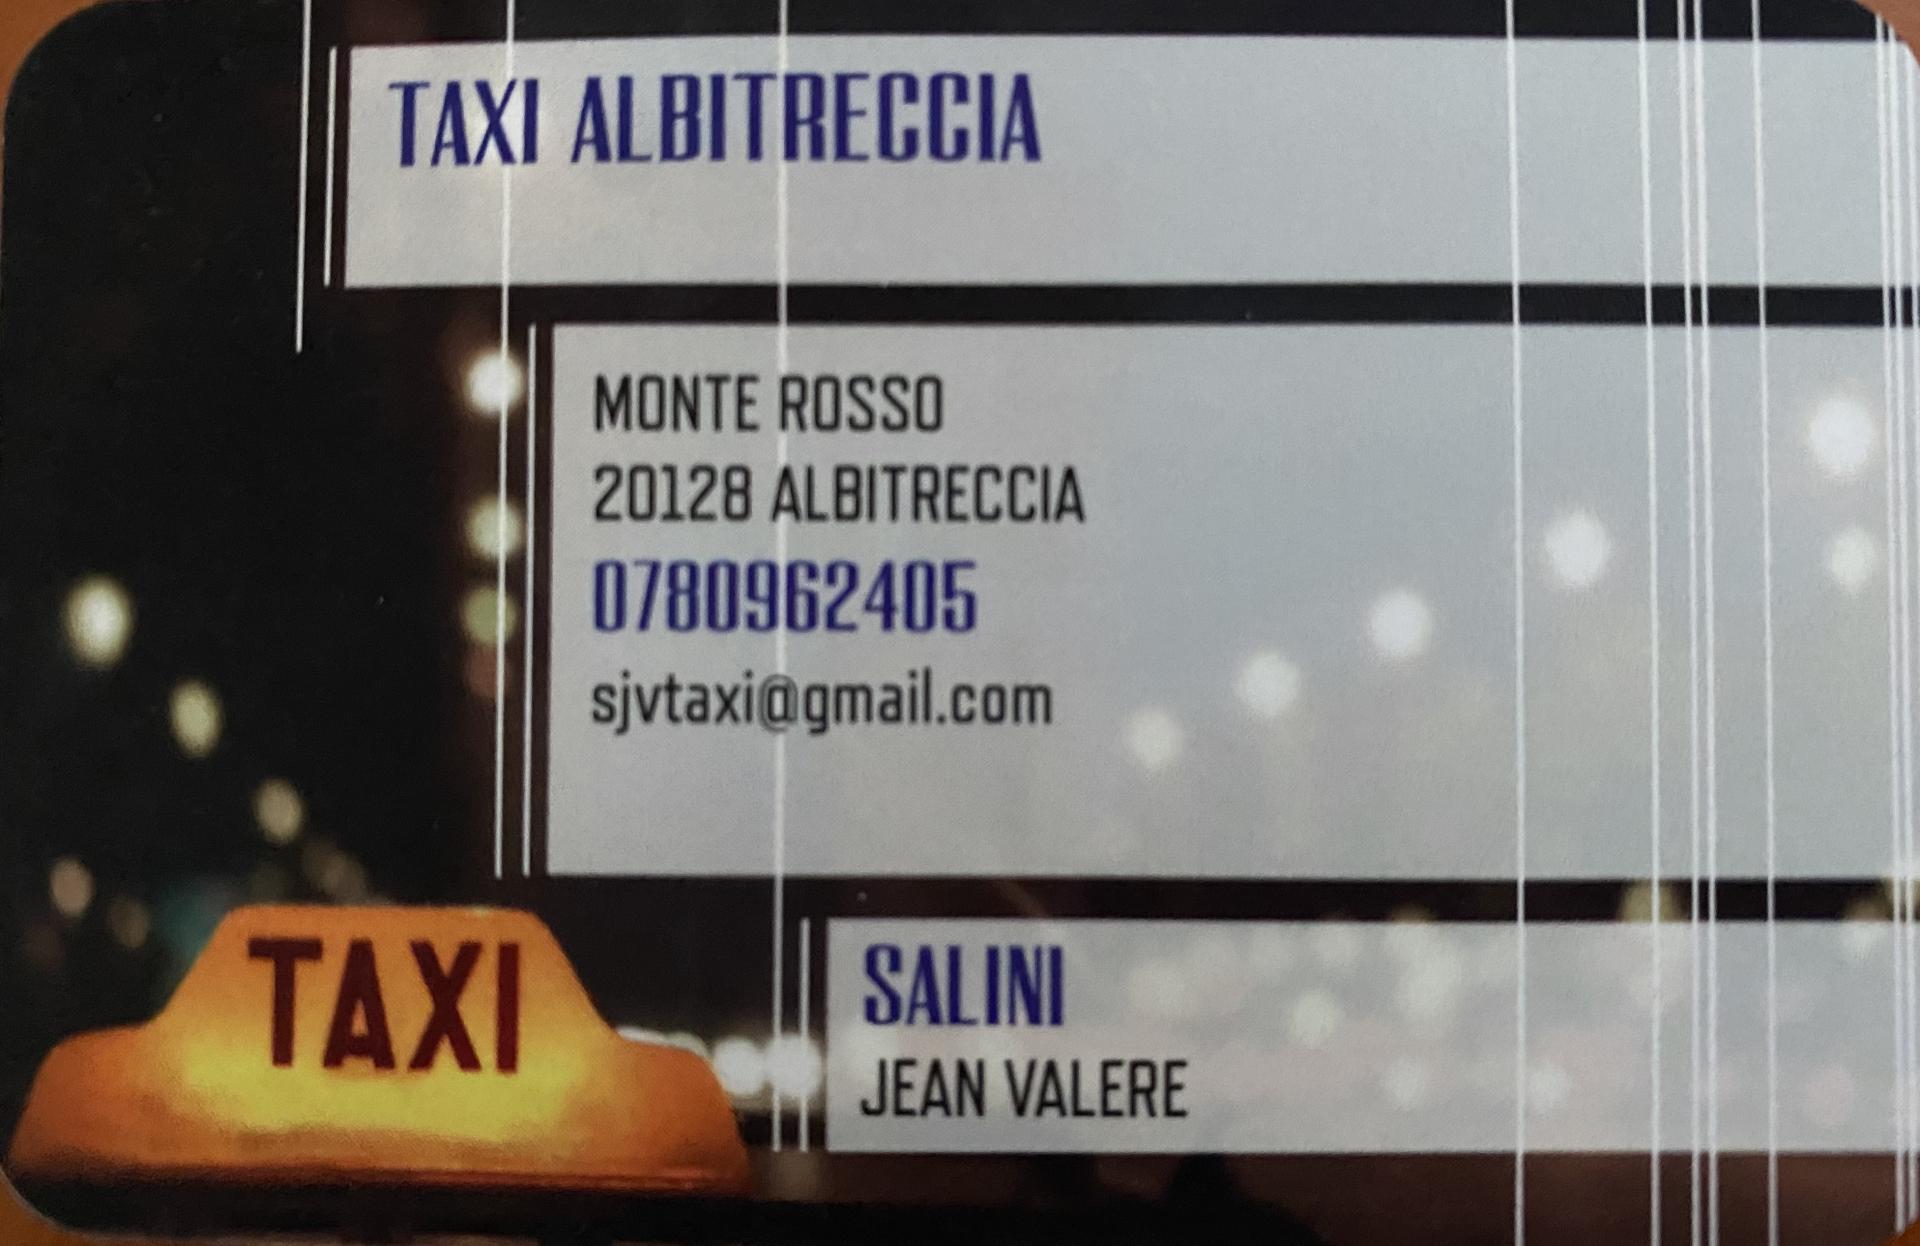 Taxi jean vale re salini